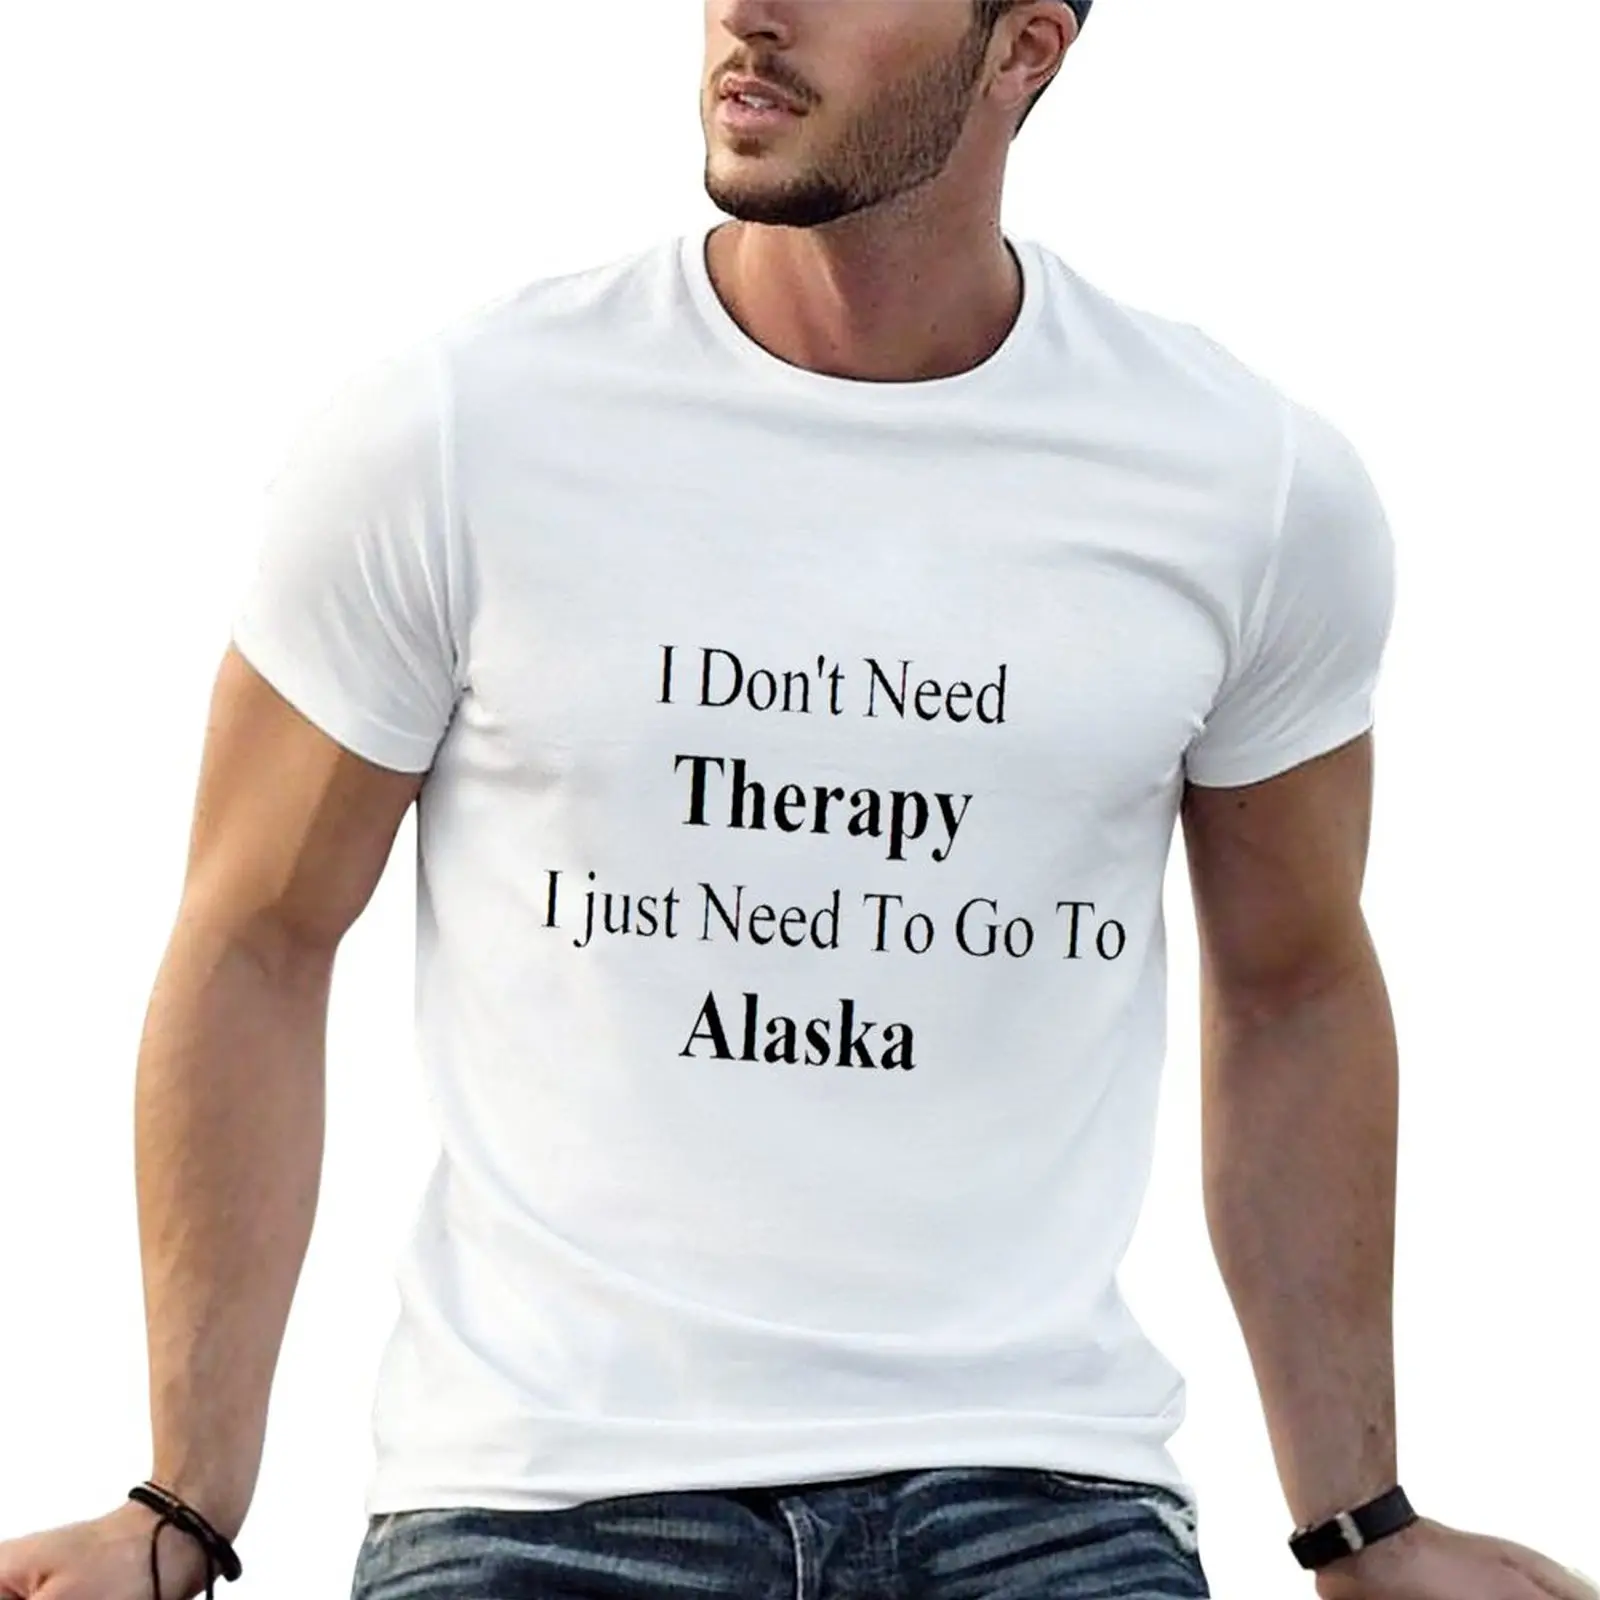 

Футболка с рисунком «Я не нуждаюсь в терапии, мне просто нужно это Аляска», футболки с рисунком, футболки, мужские хлопковые футболки